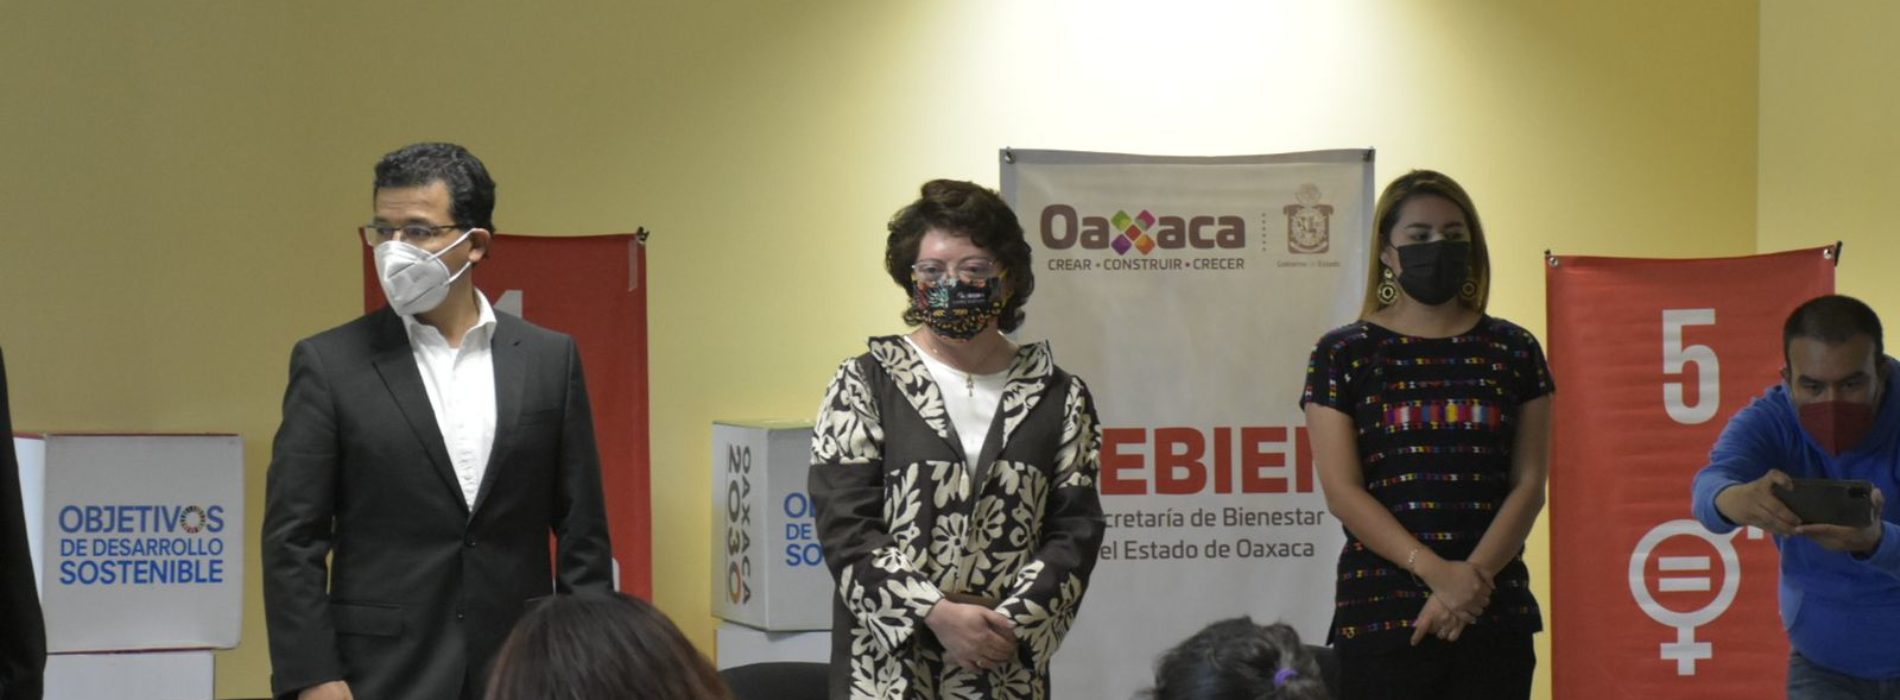 La economía de grupos de mujeres en Oaxaca es prioridad: Aurora López Acevedo